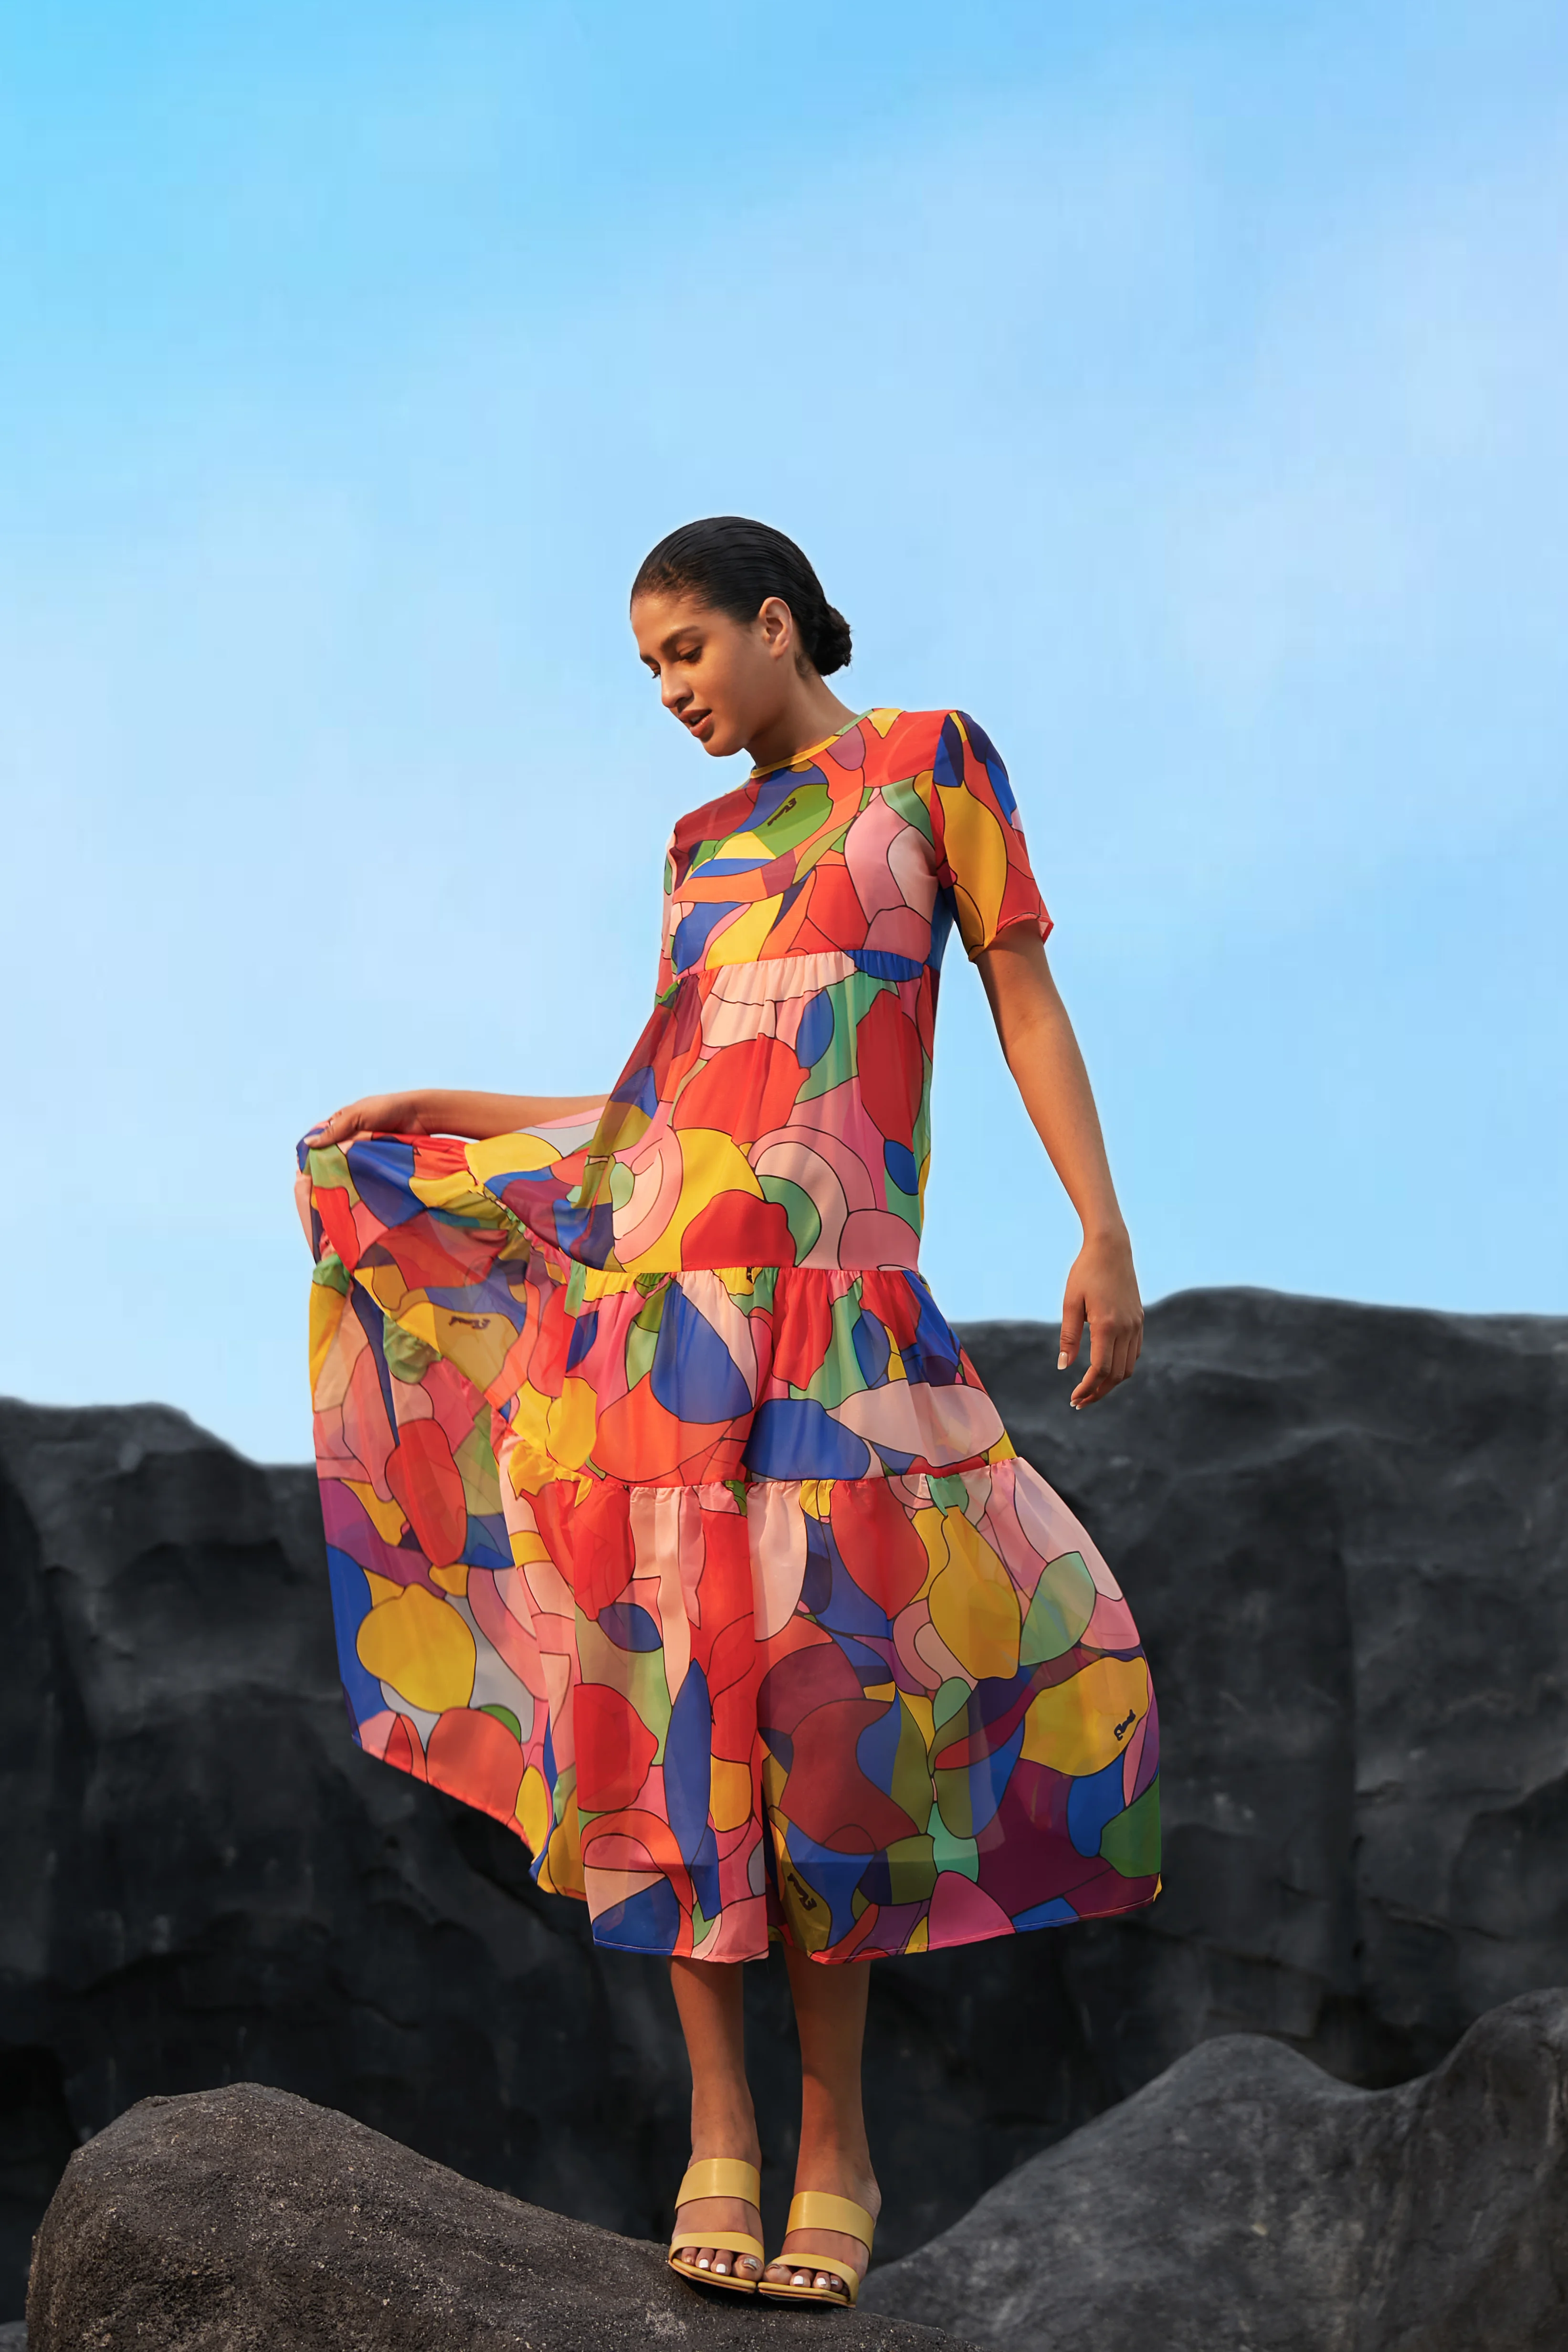 Robes Abstrait Été Élégant Polyester Léger Ample Long Manches Courtes Trapèze pour Femmes